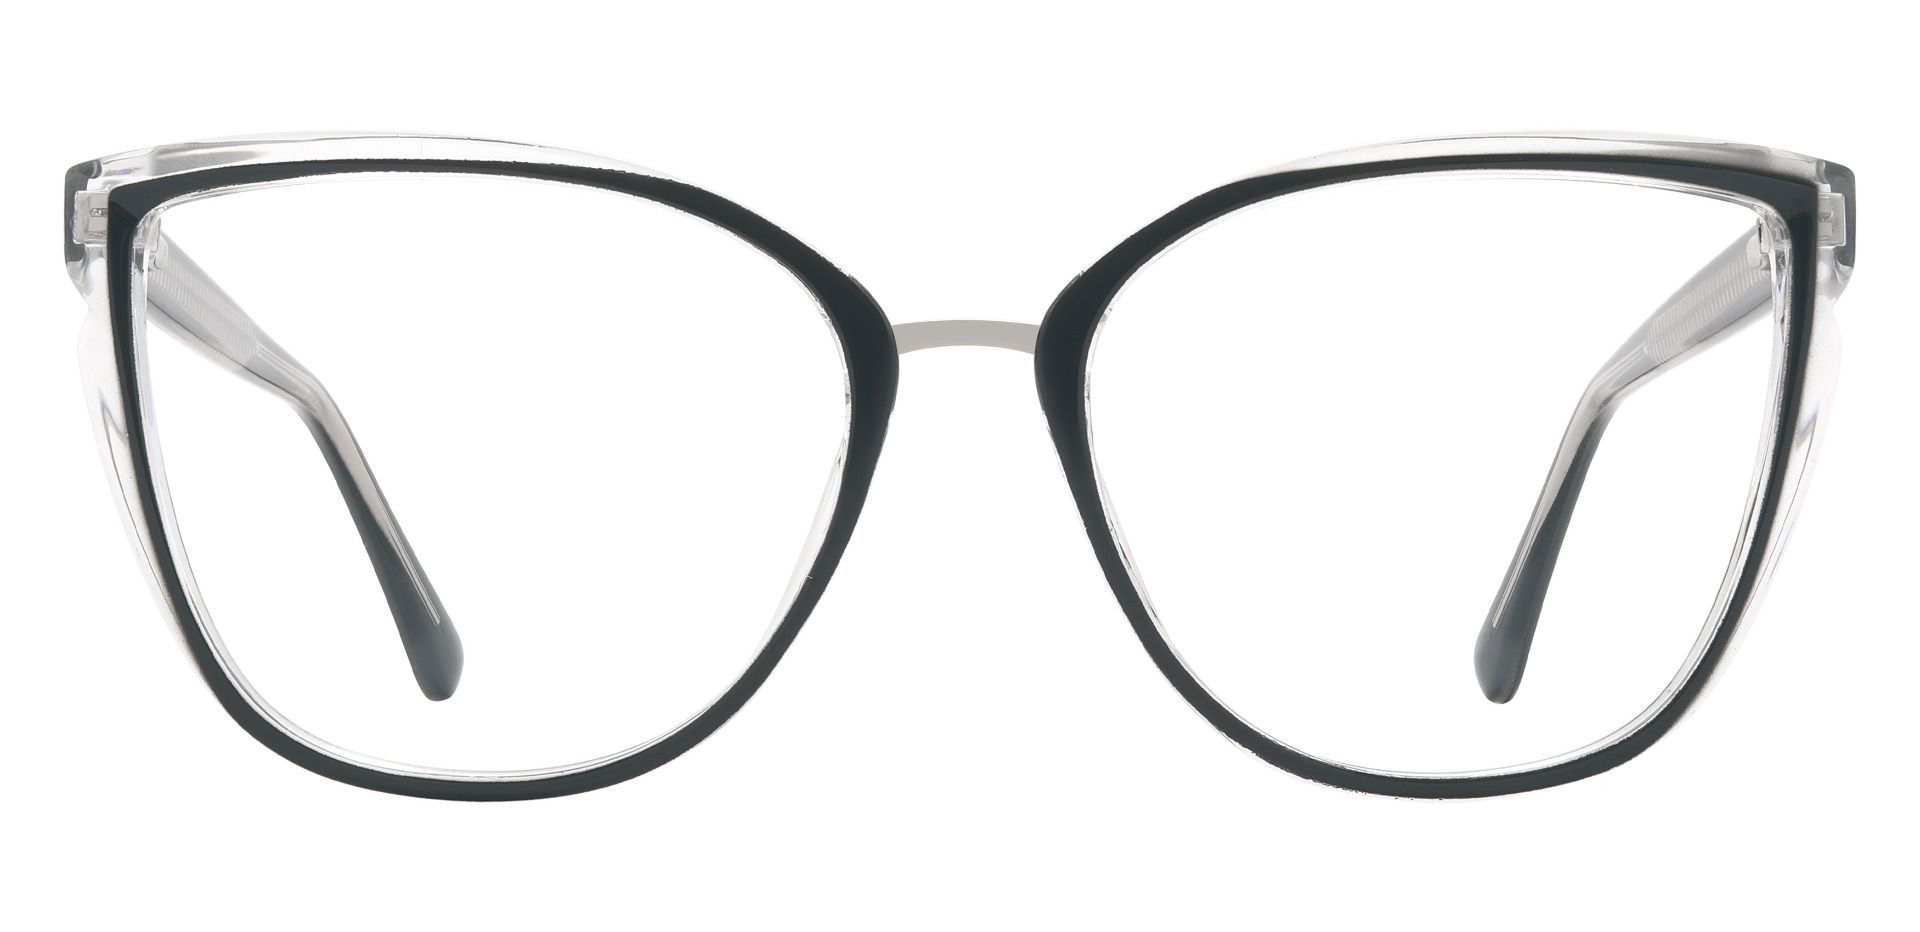 Shyla Cat Eye Prescription Glasses - Two